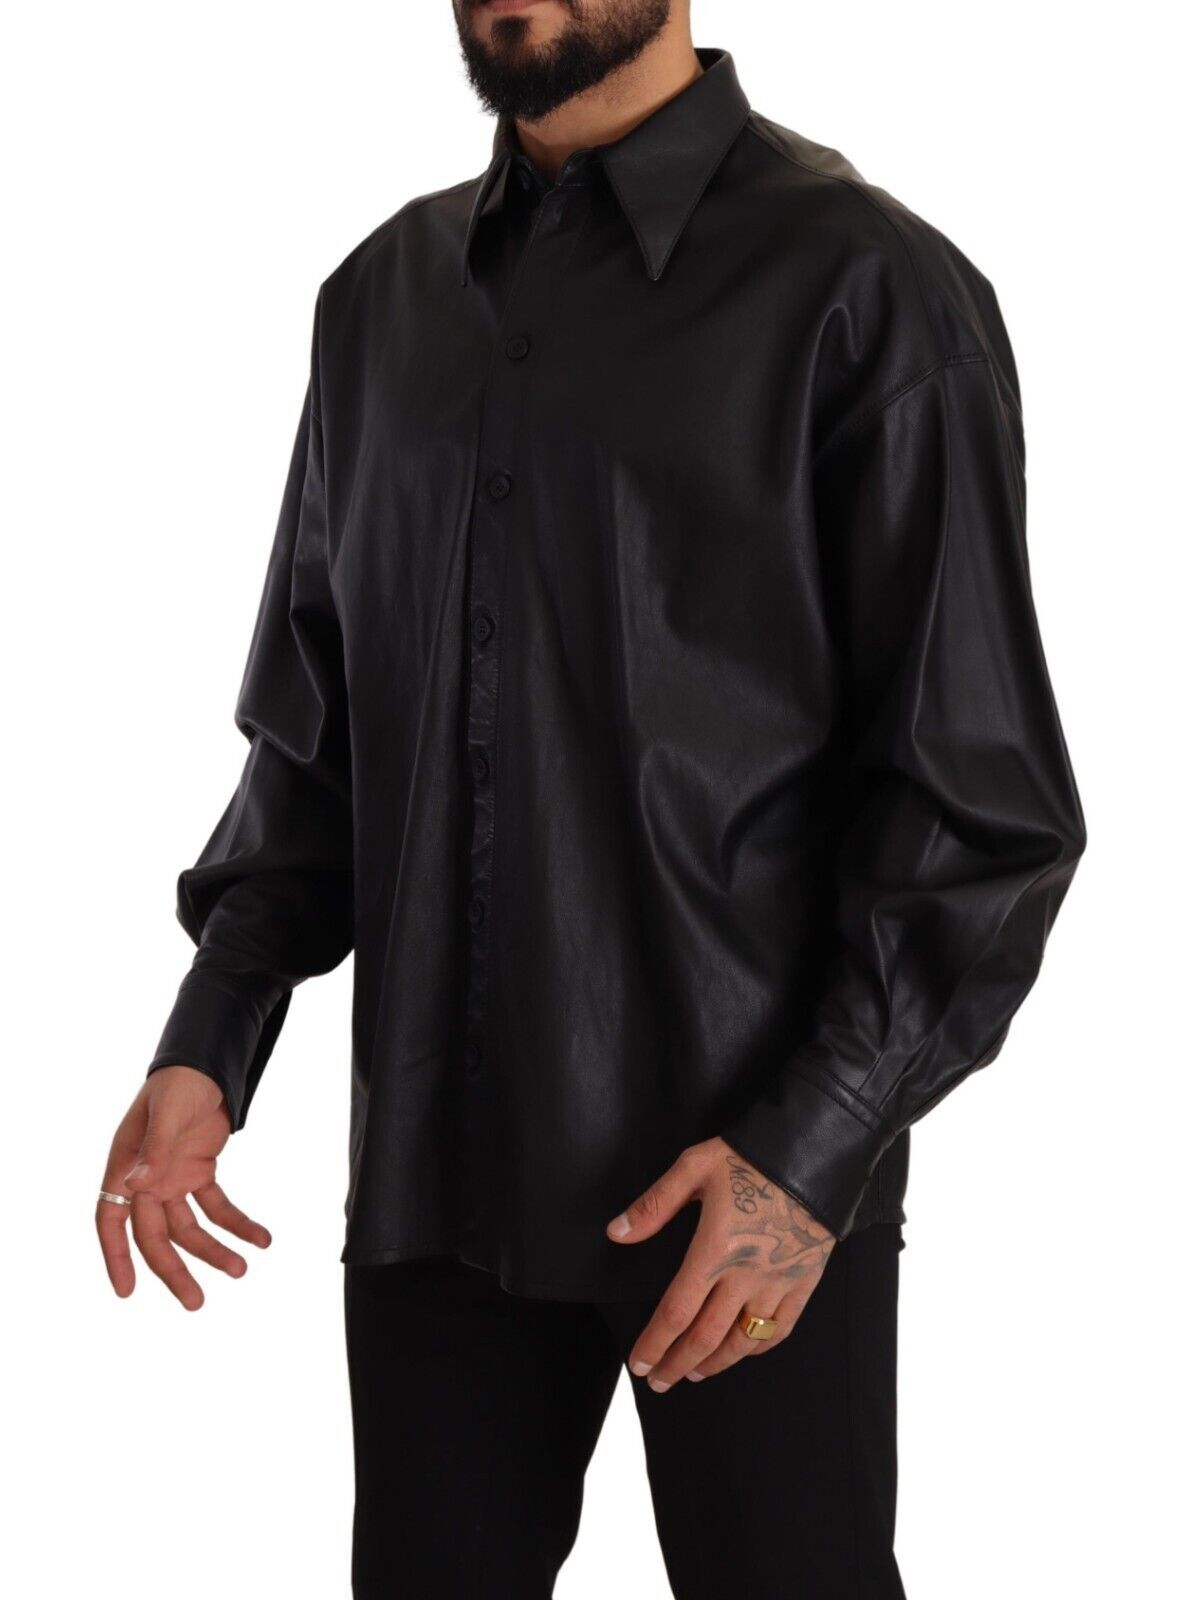 Dolce & Gabbana in pelle nera abbottonata con giacca con colletto